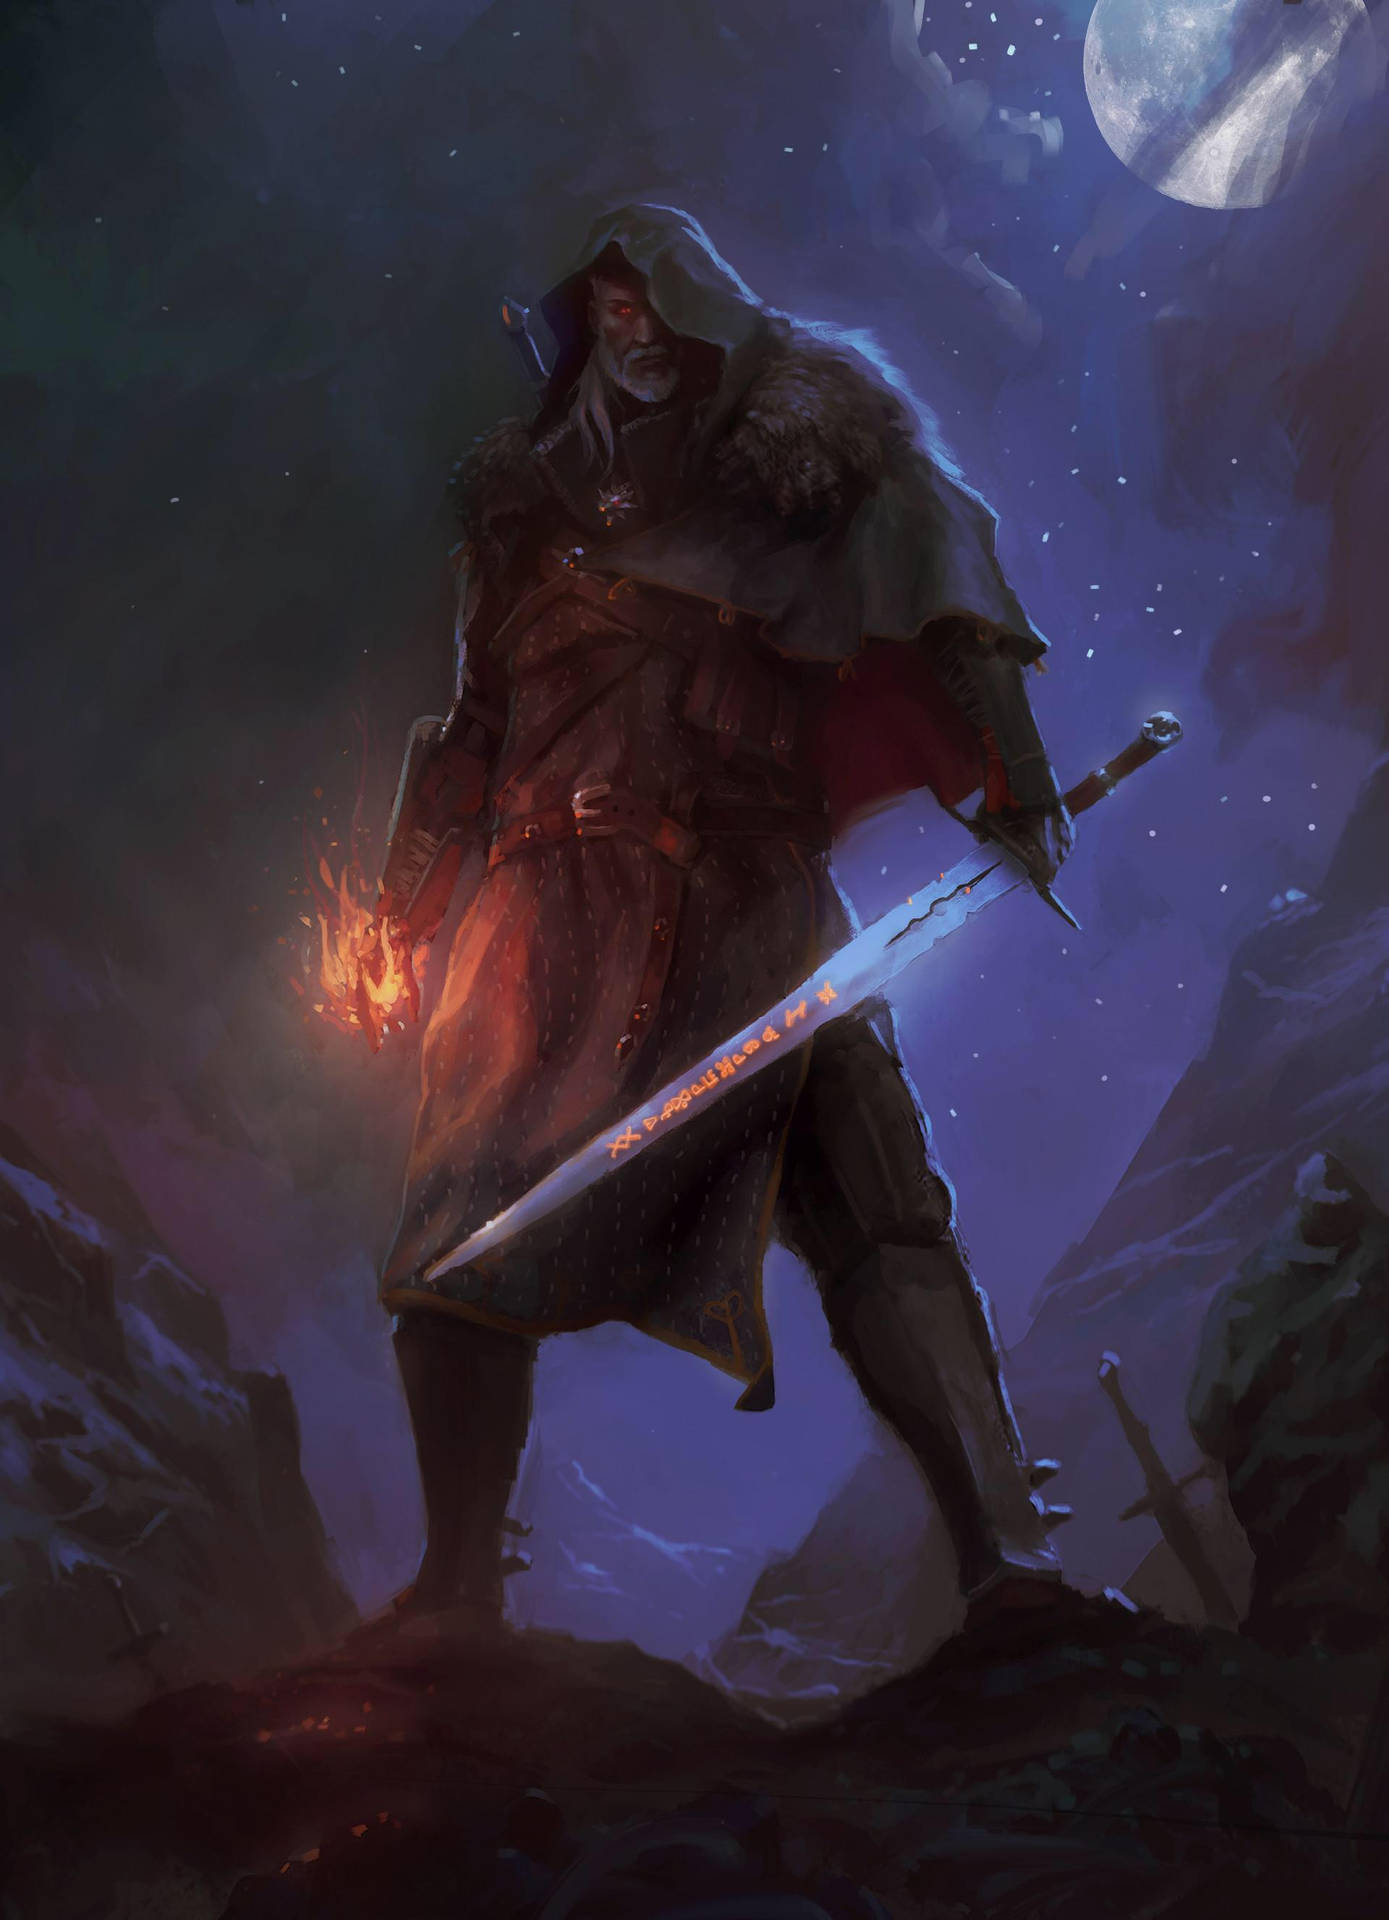 The Witcher Geralt - A Sorcerer of Immense Power Wallpaper